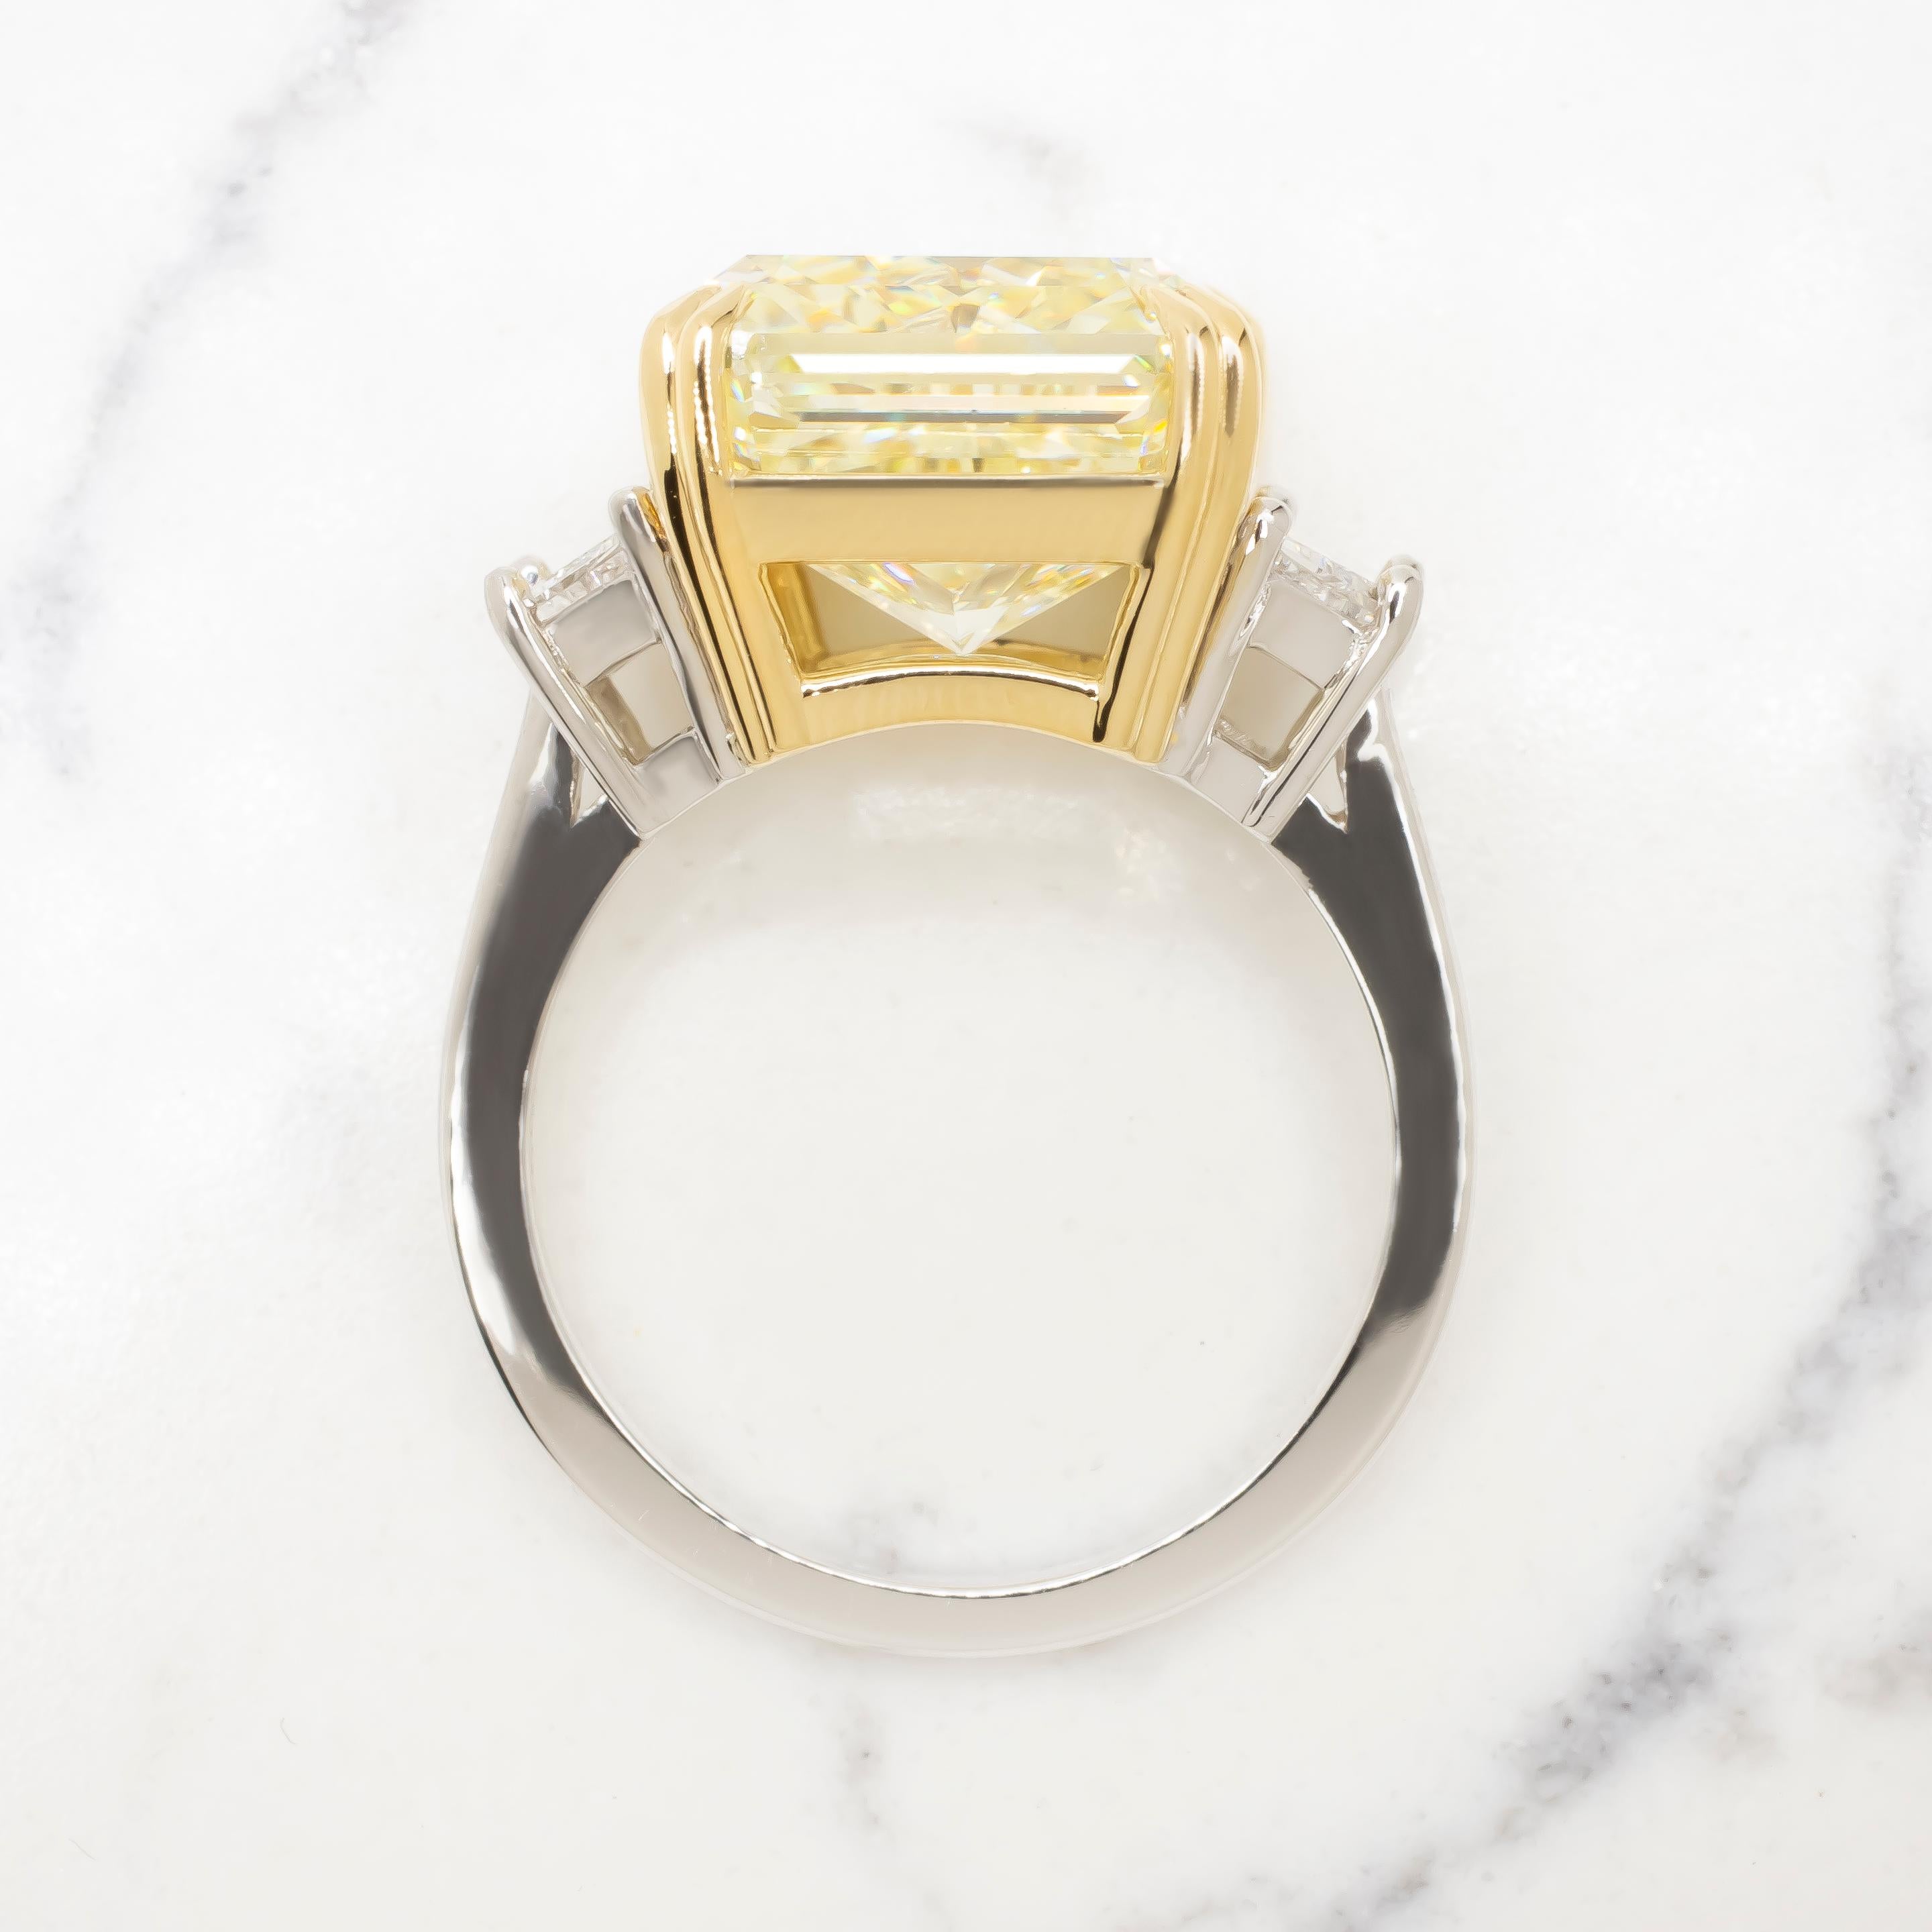 D'un éclat et d'une sophistication inégalés, cette bague certifiée GIA de 10,07 carats de diamants rayonnants de couleur jaune fantaisie avec trapèze est un véritable chef-d'œuvre d'élégance. En son cœur se trouve un captivant diamant jaune